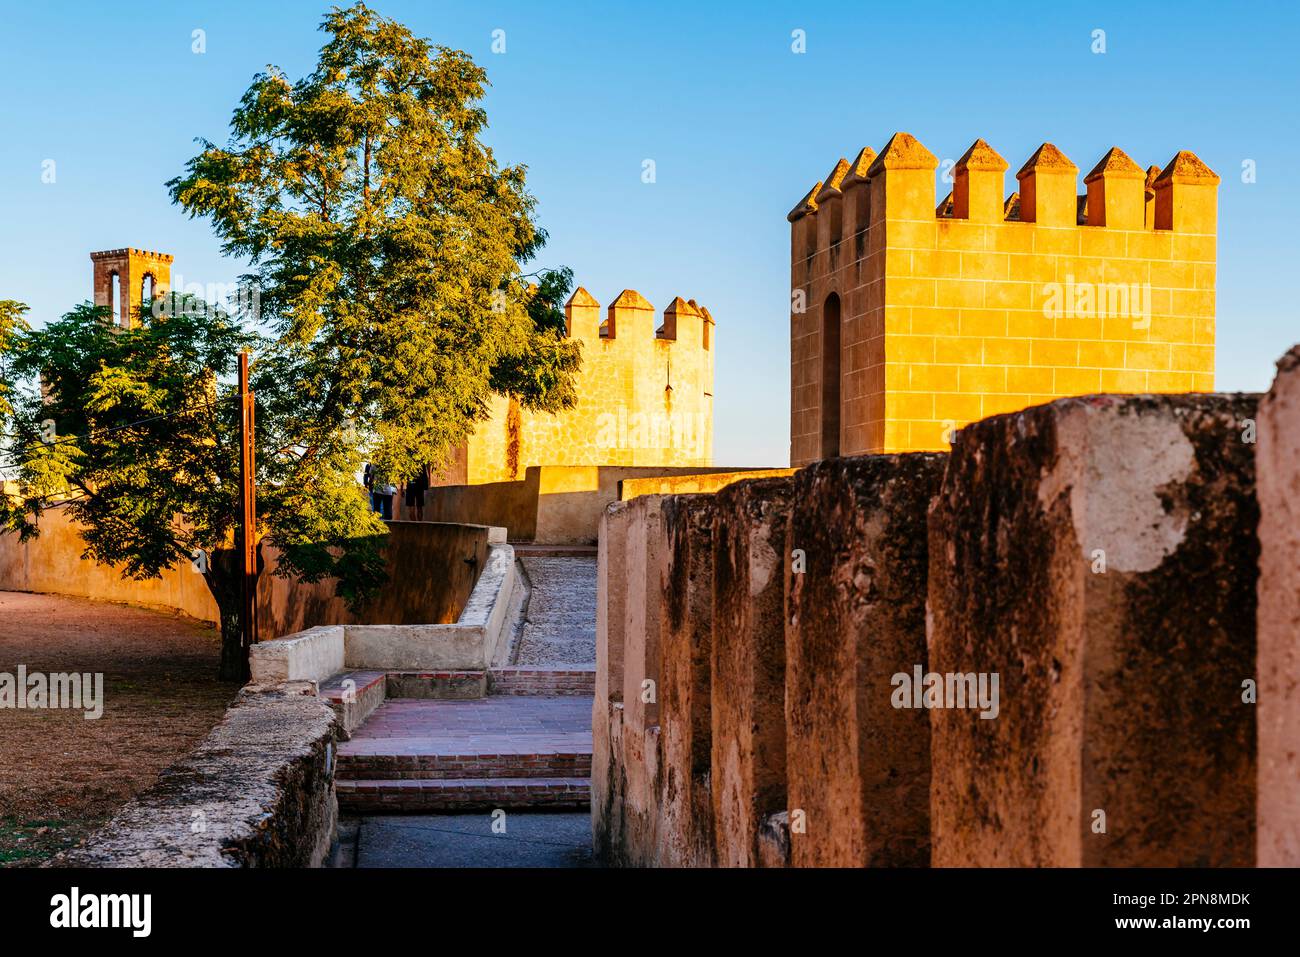 Chemin de ronde dell'Alcazaba di Badajoz. La chemin de ronde è stata ideata come una passerella che permette ai difensori di pattugliare le cime dei bastioni, protetti Foto Stock